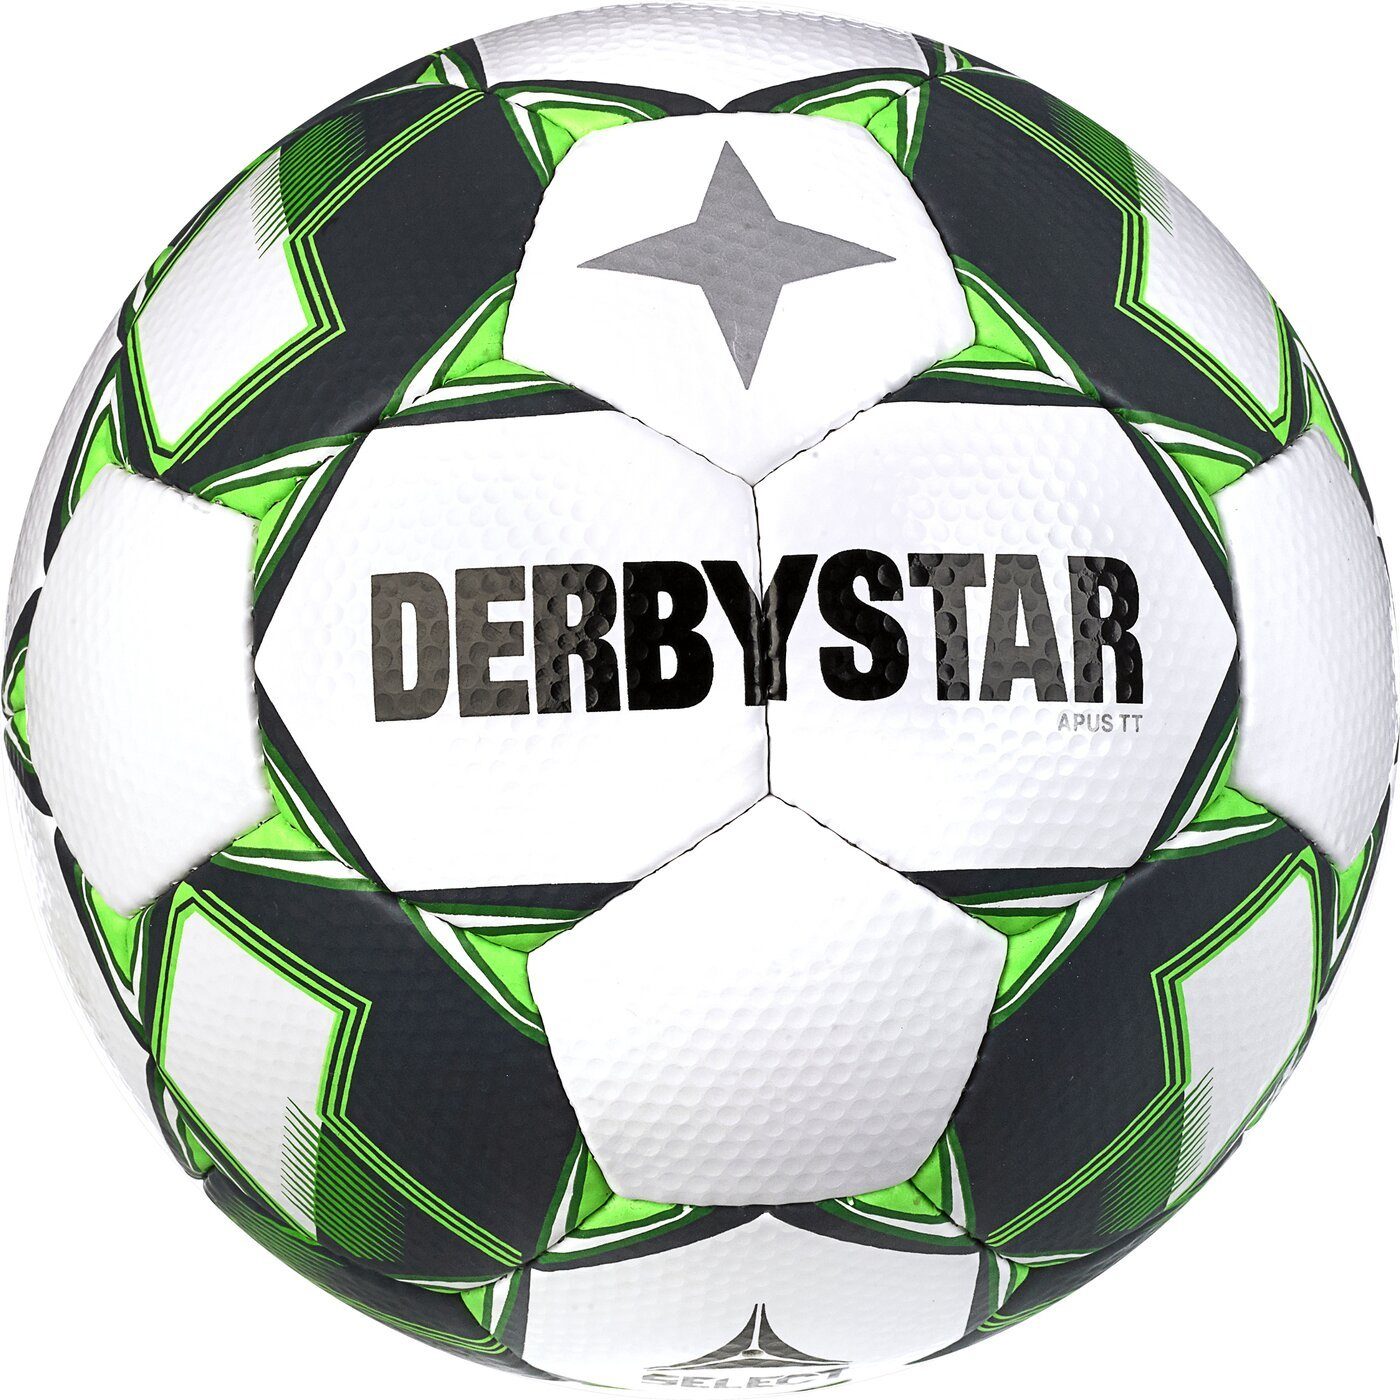 Derbystar Fußball Apus TT GRÜN v23 WEISS